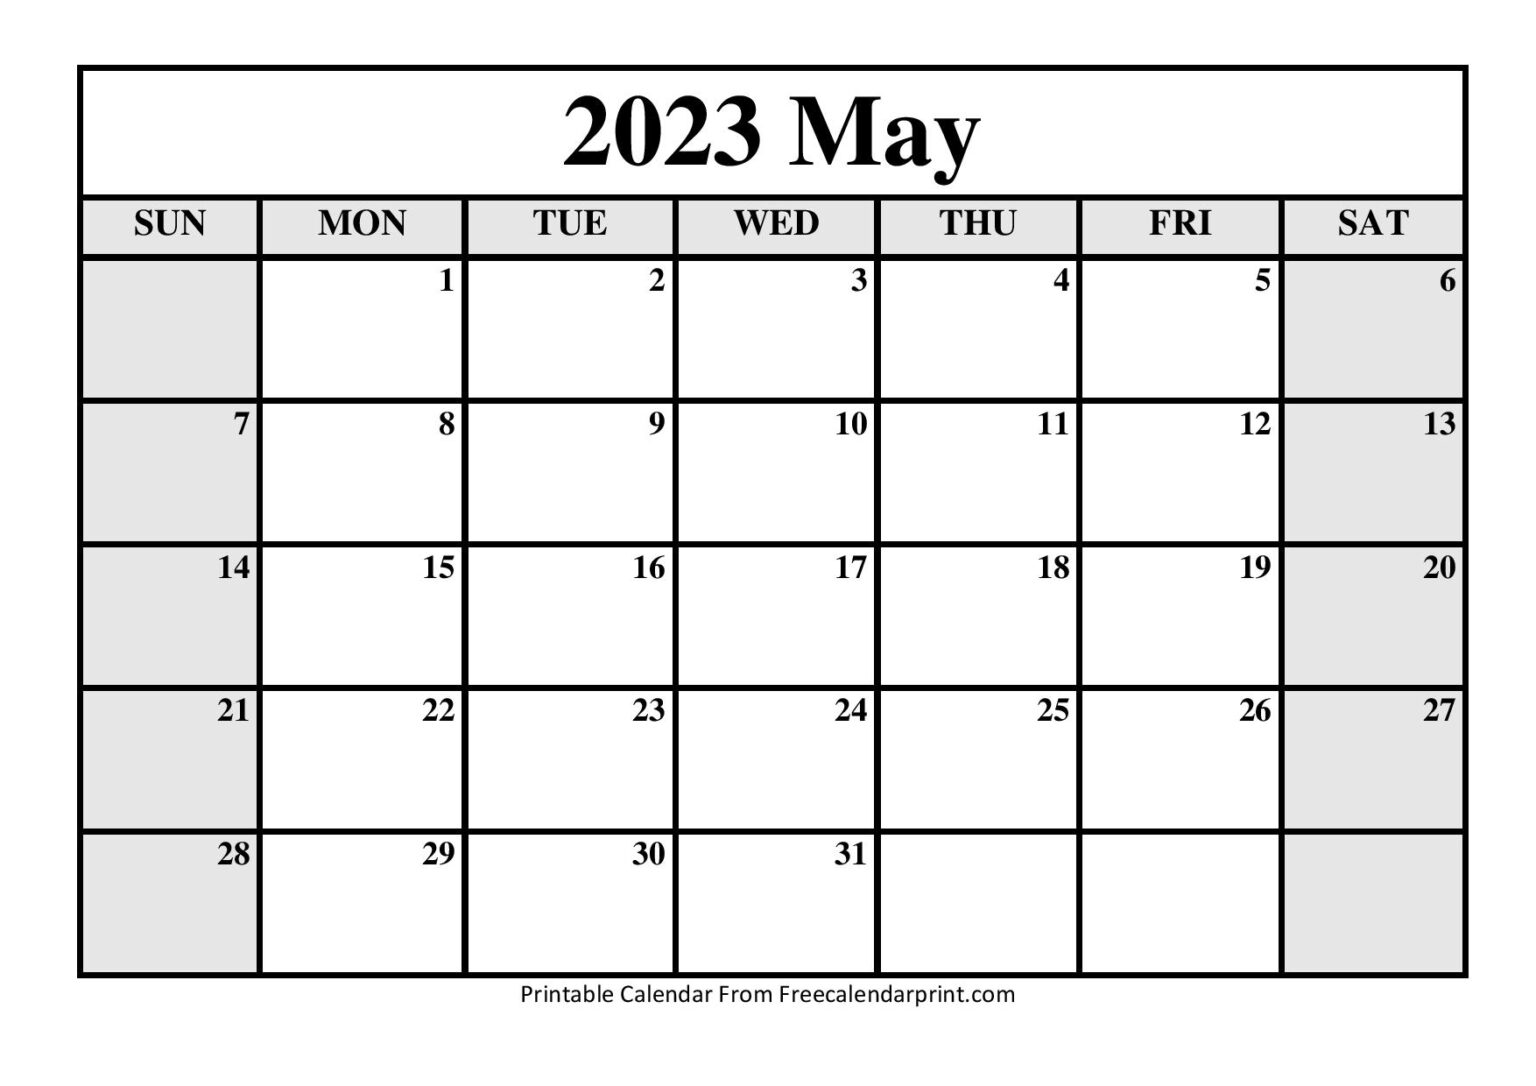 May 2023 Calendar Printable Free Printable World Holiday Riset